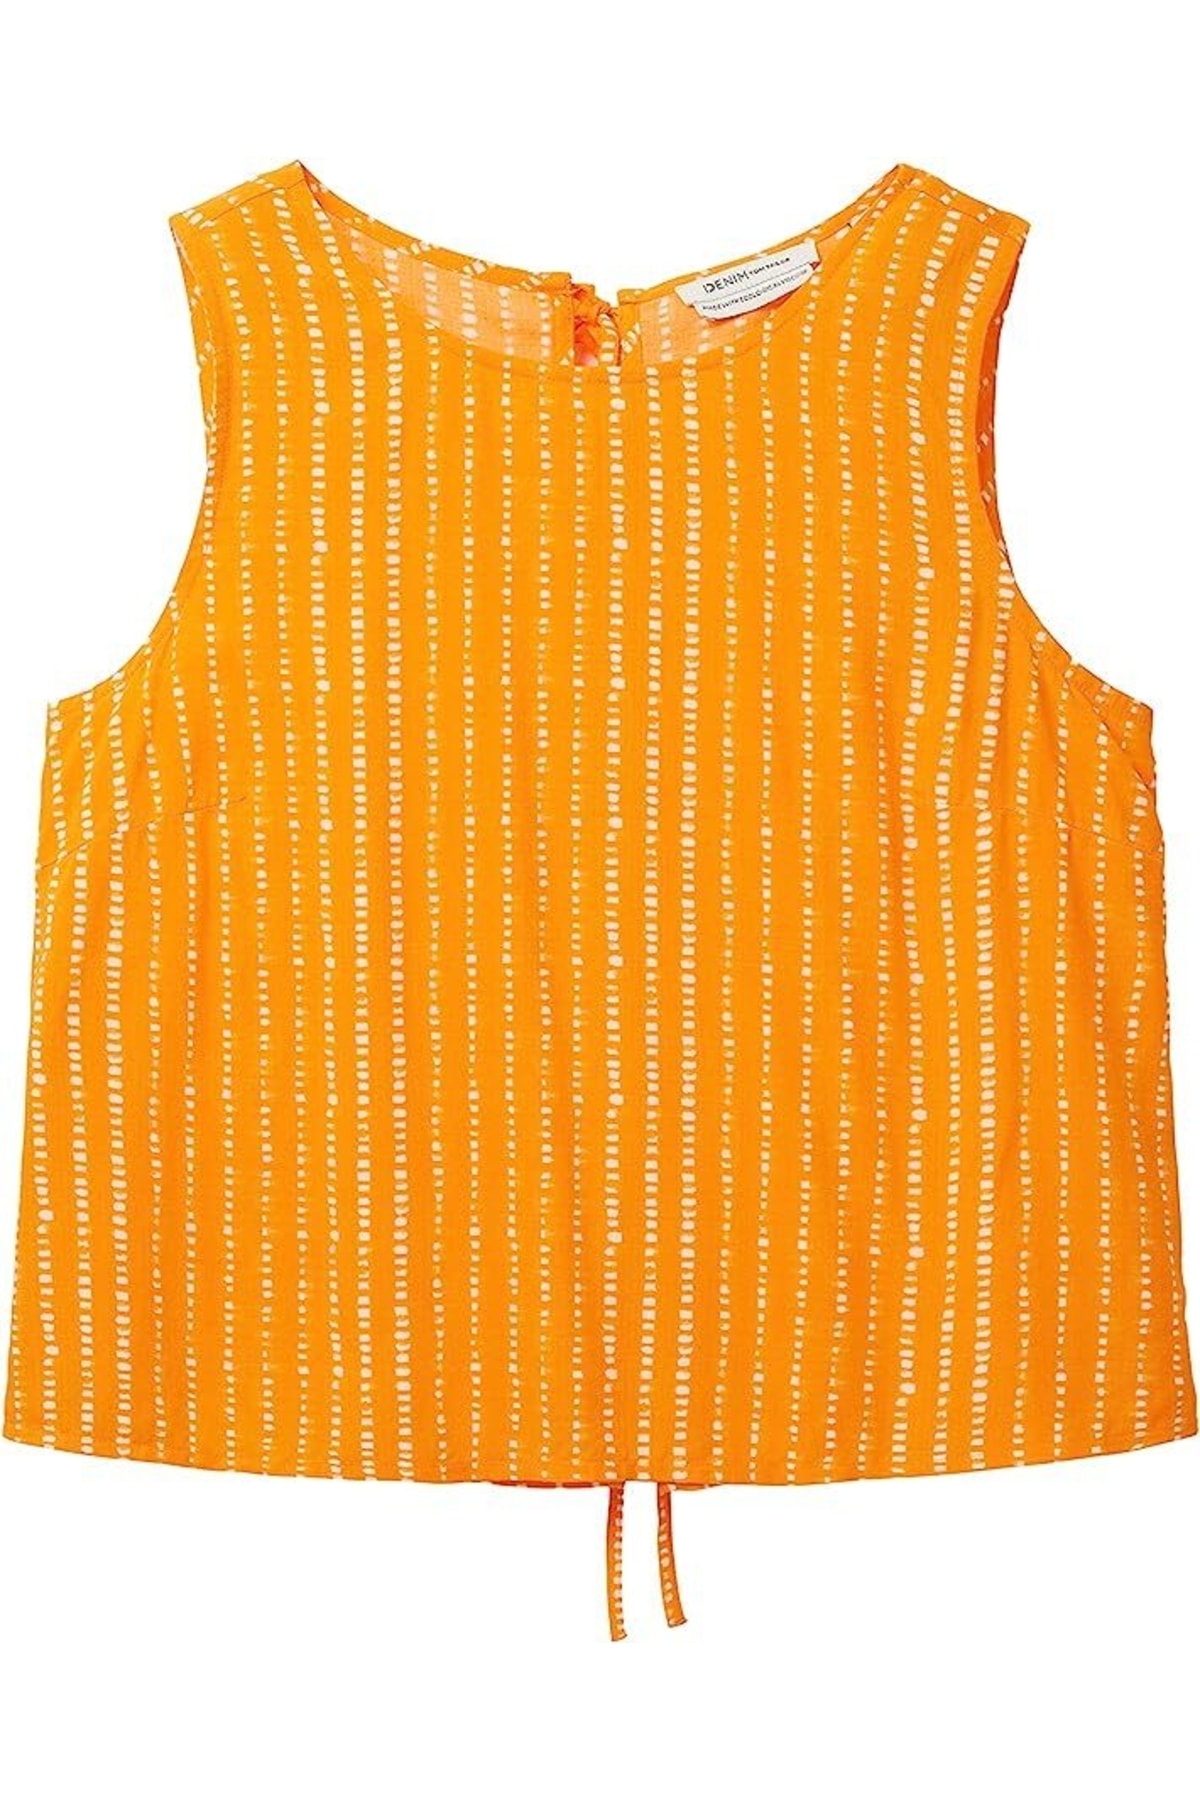 Блуза - Оранжевый - Классический крой Tom Tailor Denim блуза оранжевый классический крой tom tailor denim